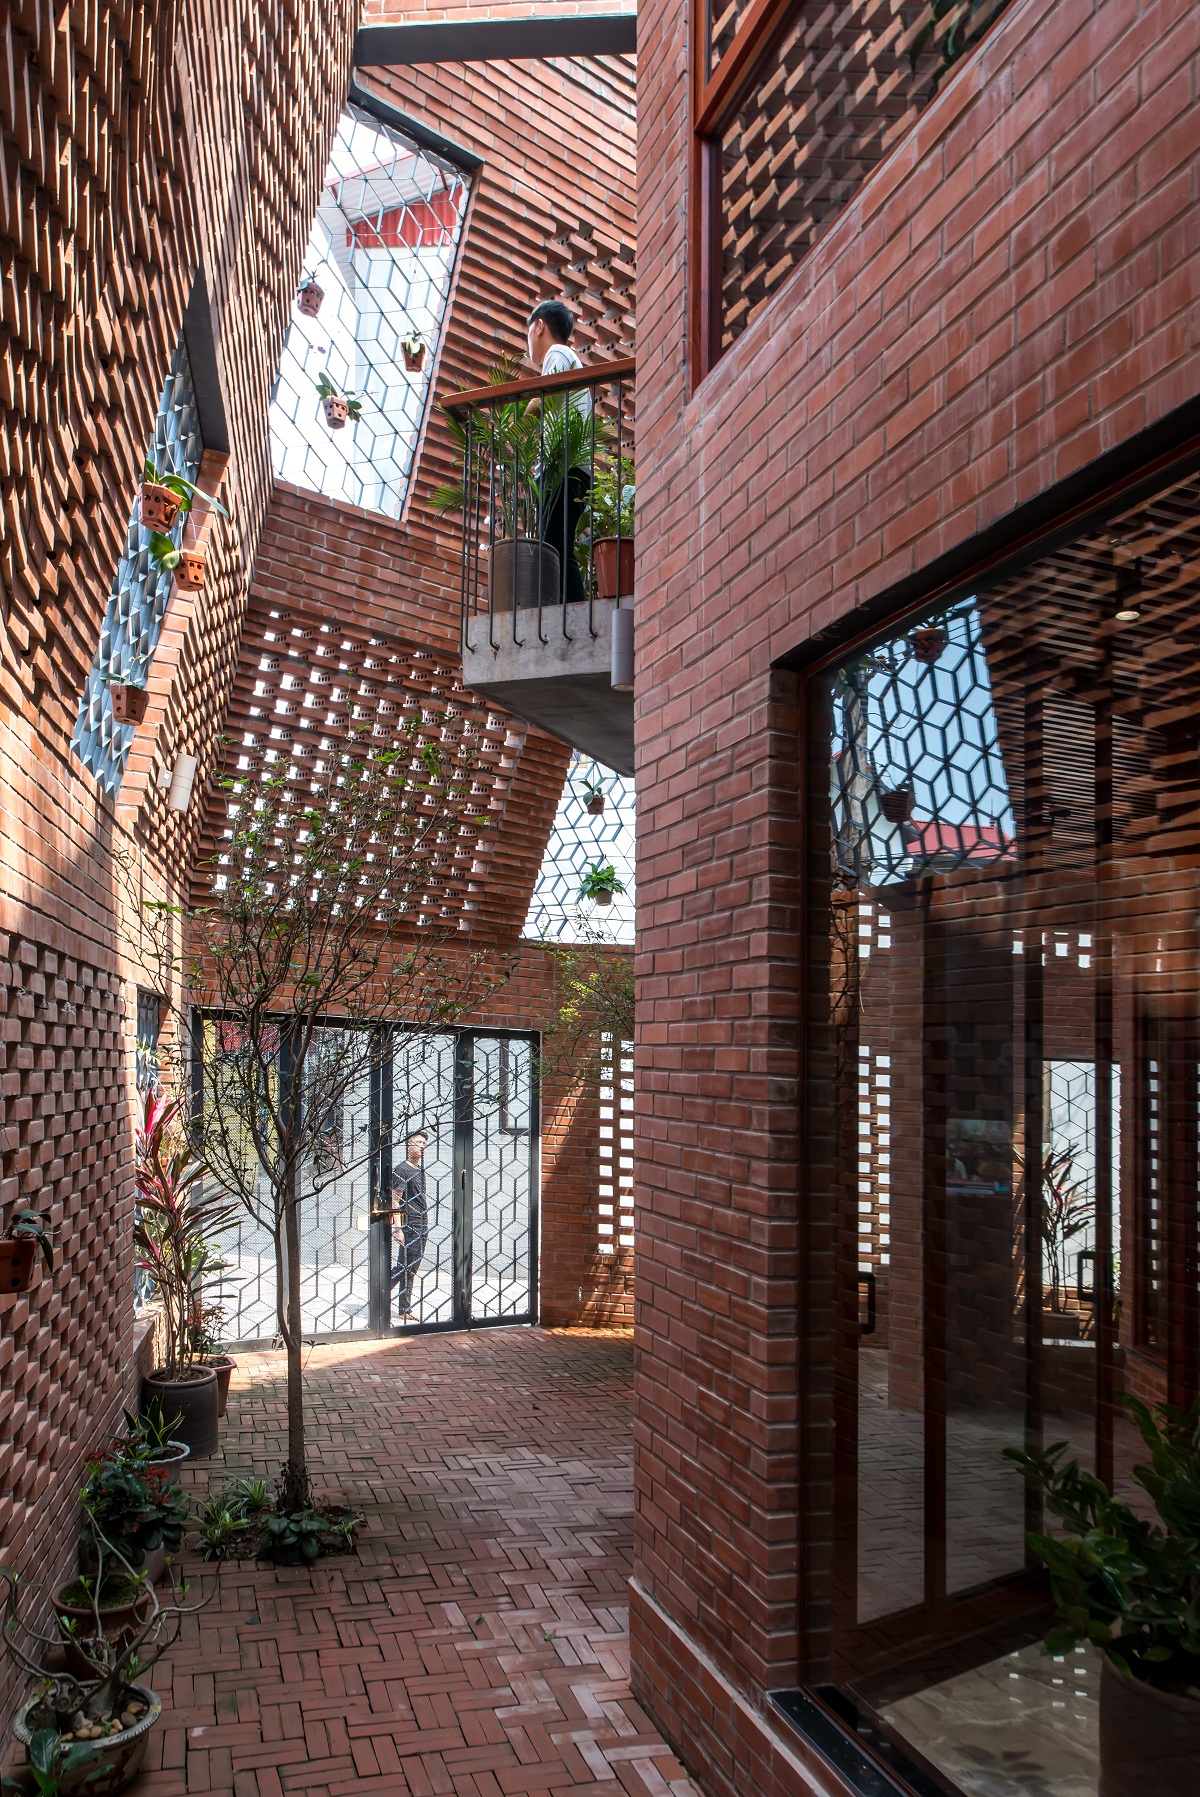 “Nơi chốn của gạch và ngói” – H&P Architects tham dự triển lãm Seoul Biennale of Architecture and Urbanism 2021 | Tạp chí Kiến trúc Việt Nam